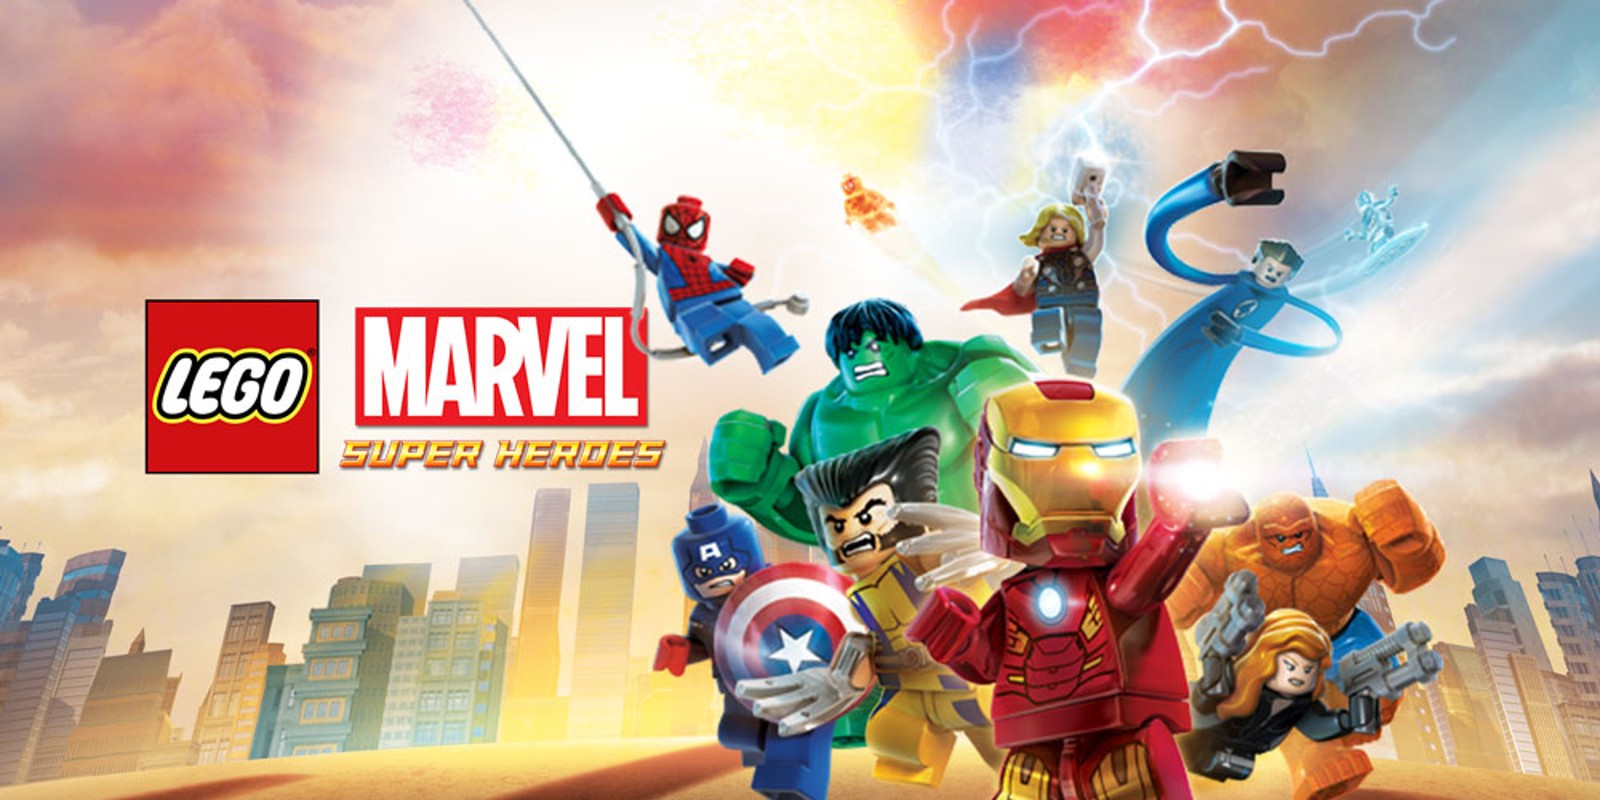 Play Marvel Super Hero Squad on NDS - Emulator Online